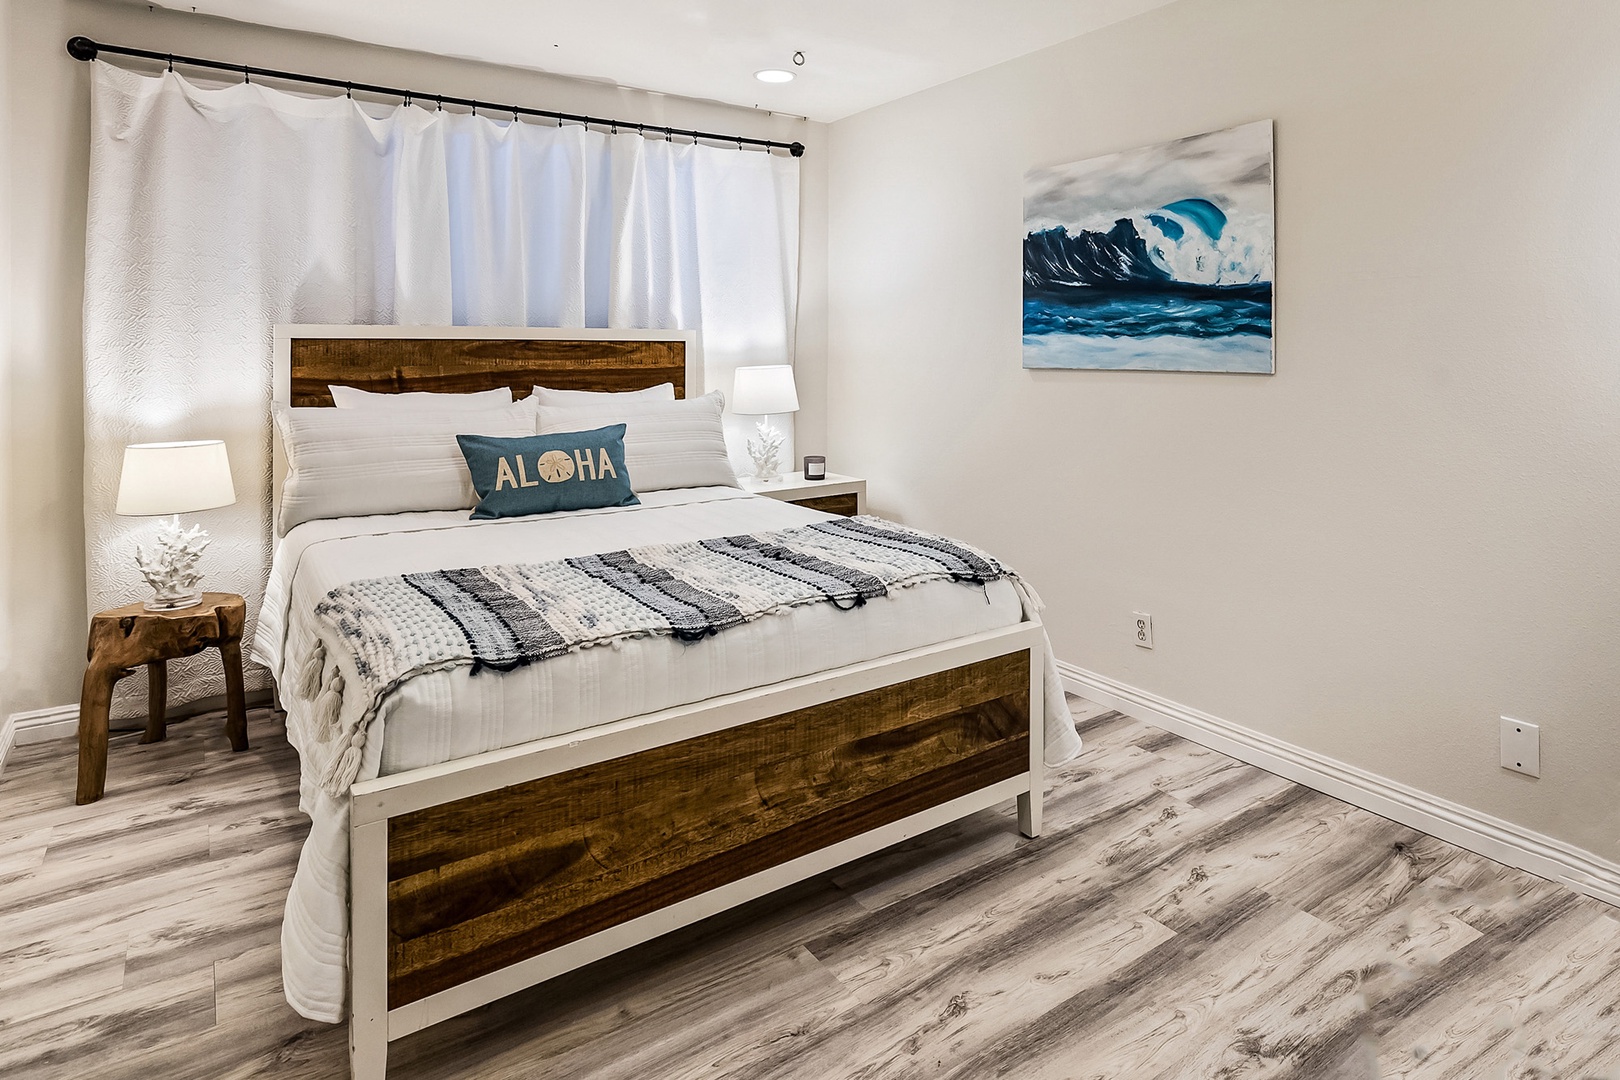 Honolulu Vacation Rentals, Hale Ho'omaha - Guest Bedroom 3 with queen bed